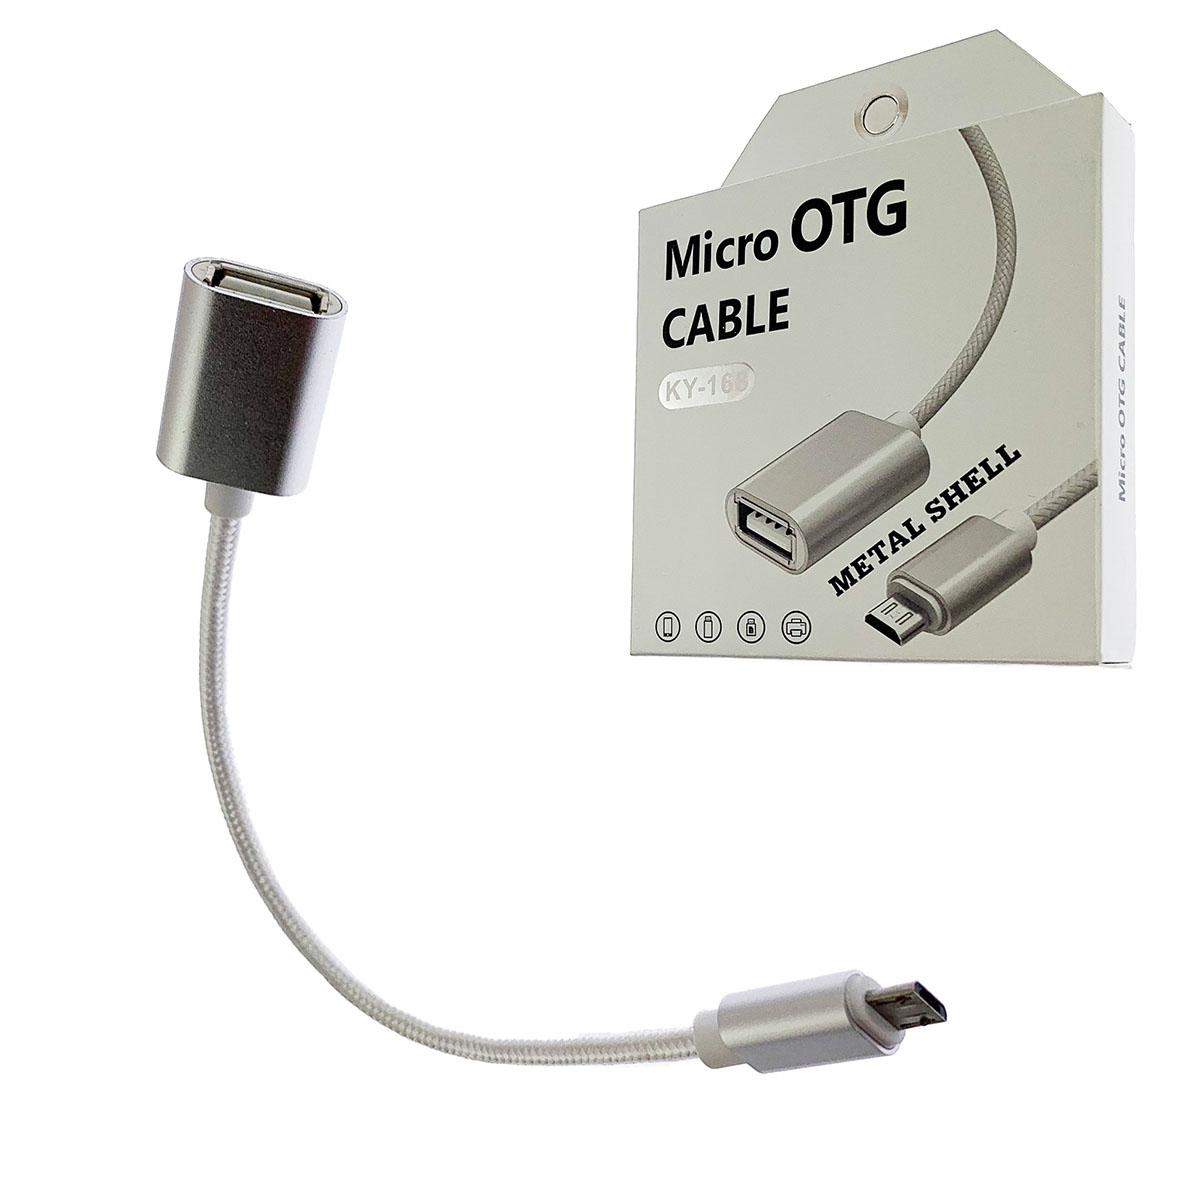 OTG переходник, адаптер, конвертер KY-168 на Micro USB, длина кабеля 10 см, цвет серебристо белый